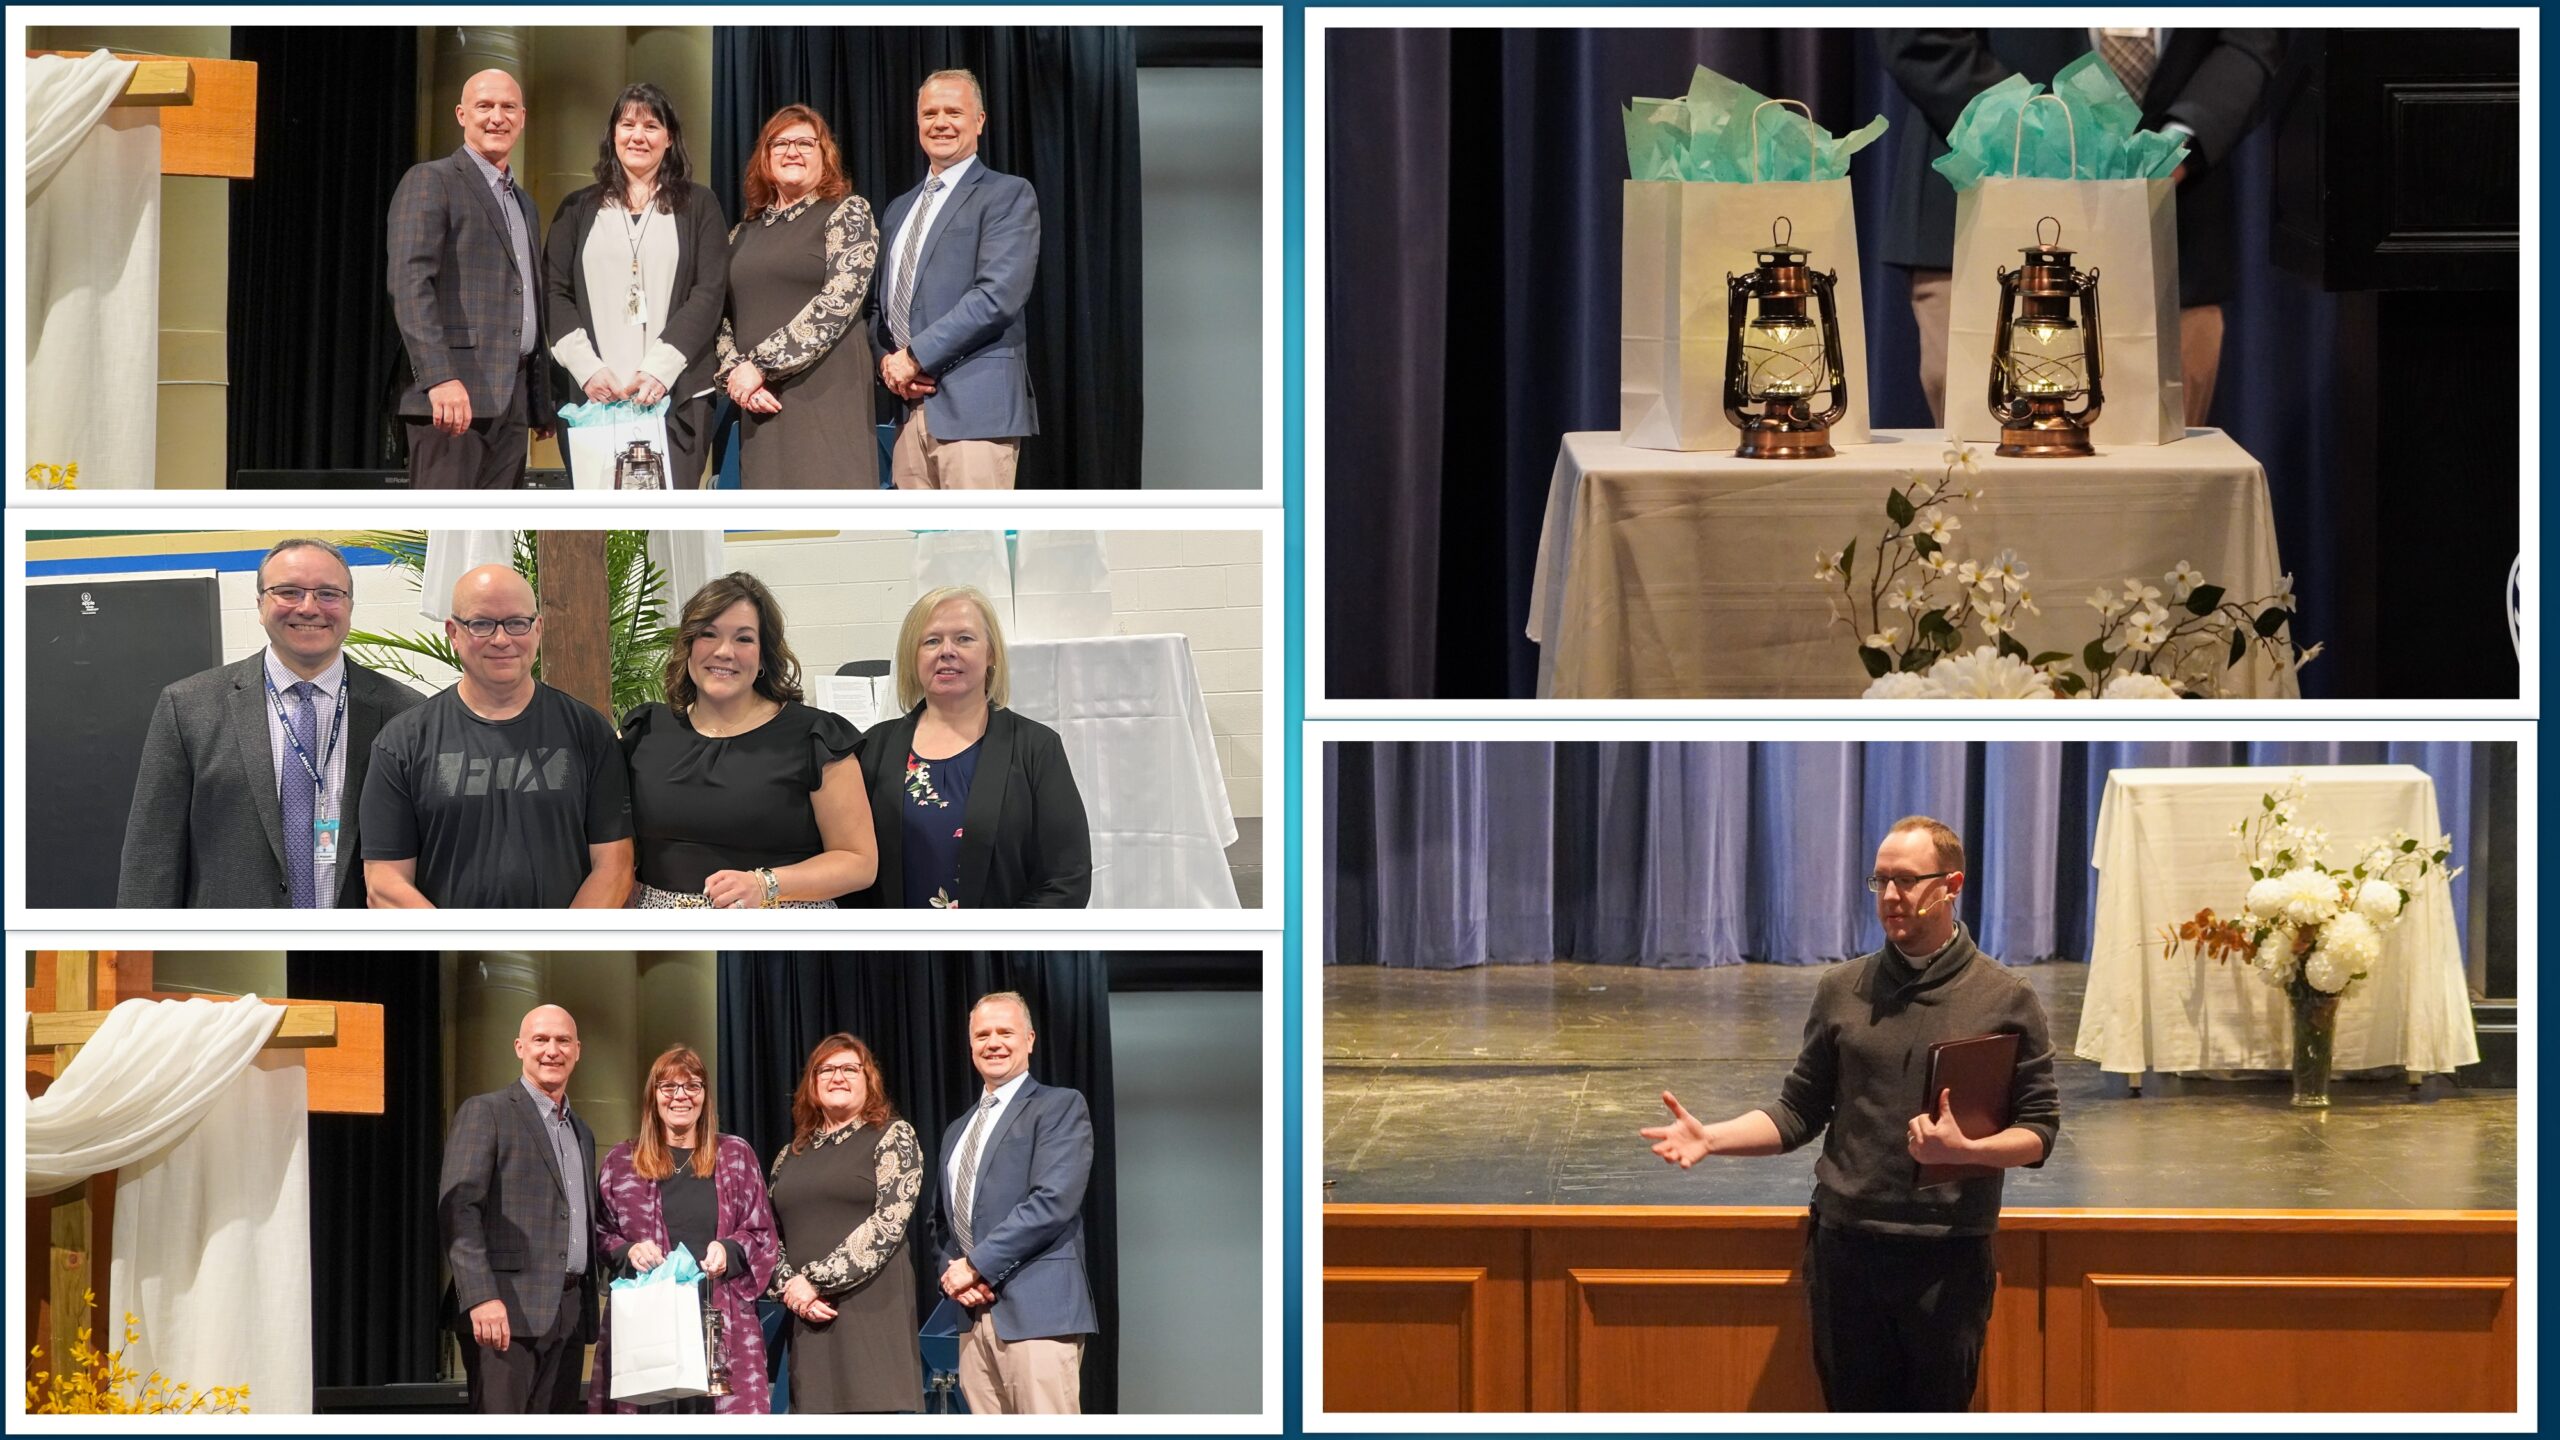 Living Faith Award Winners Honoured at St. Clair Catholic System Faith Day